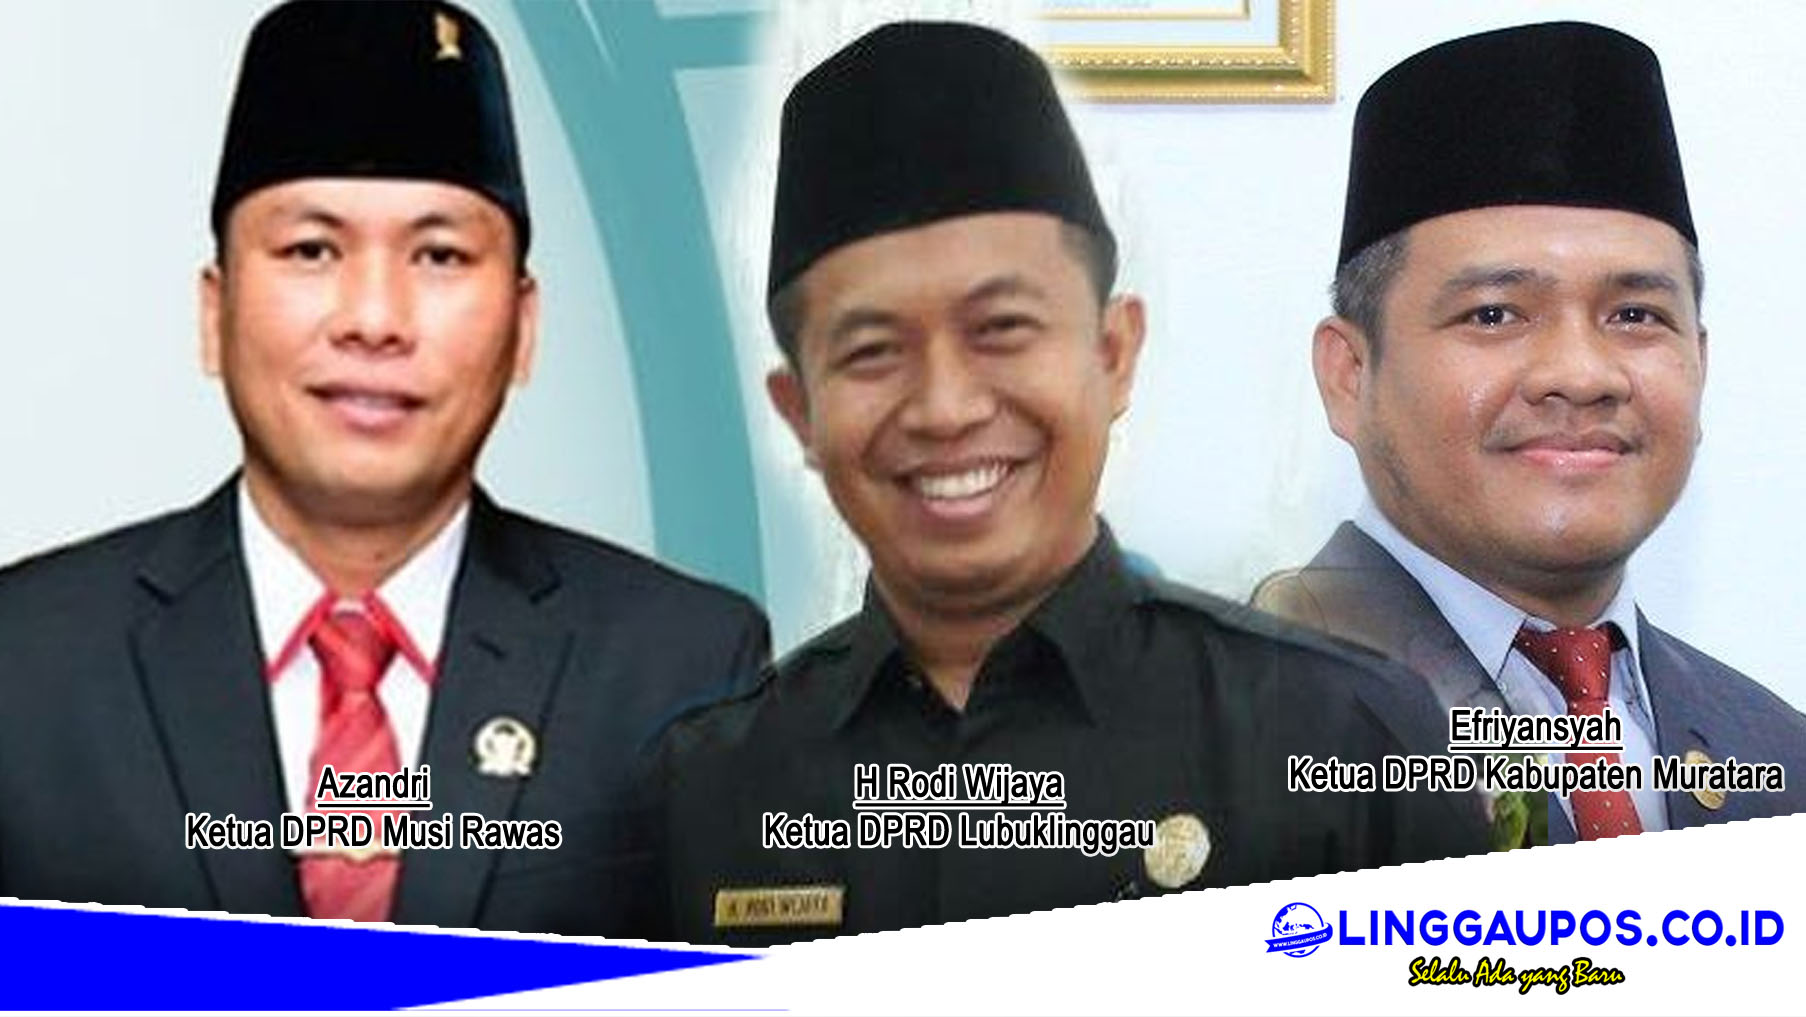 Siapa yang Paling Kaya? Antara Ketua DPRD Musi Rawas, Lubuklinggau dan Muratara